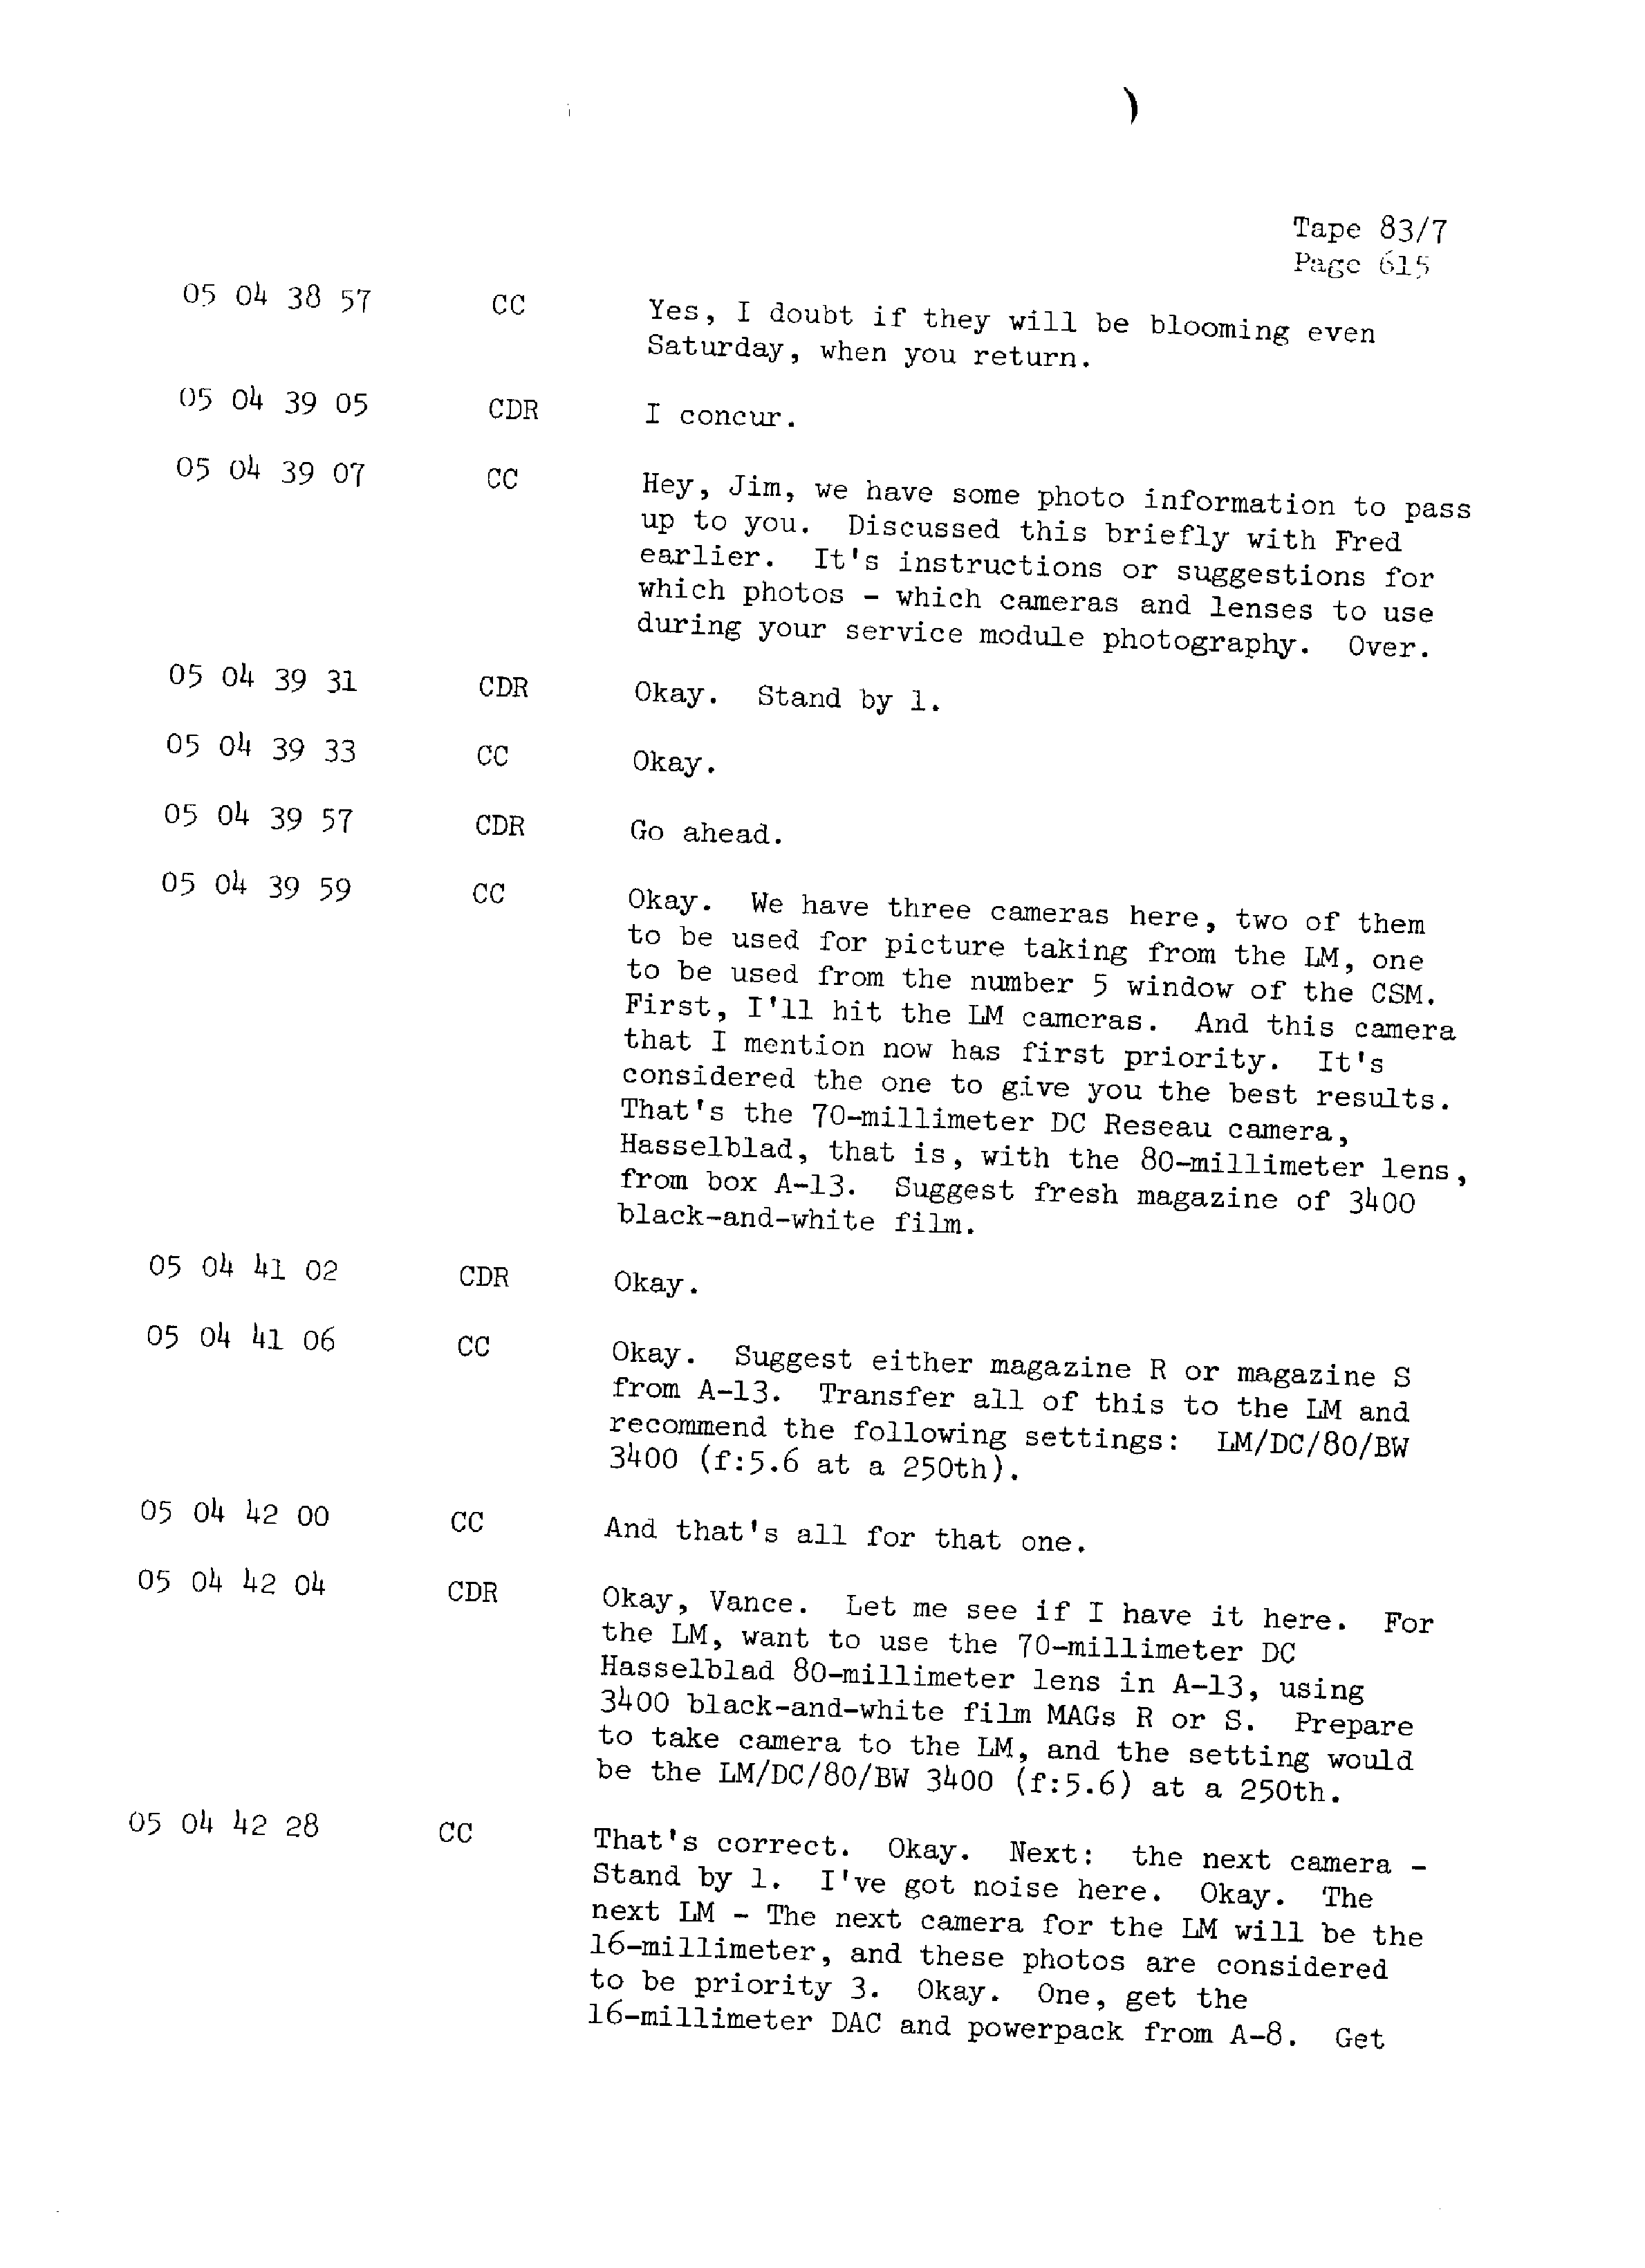 Page 622 of Apollo 13’s original transcript